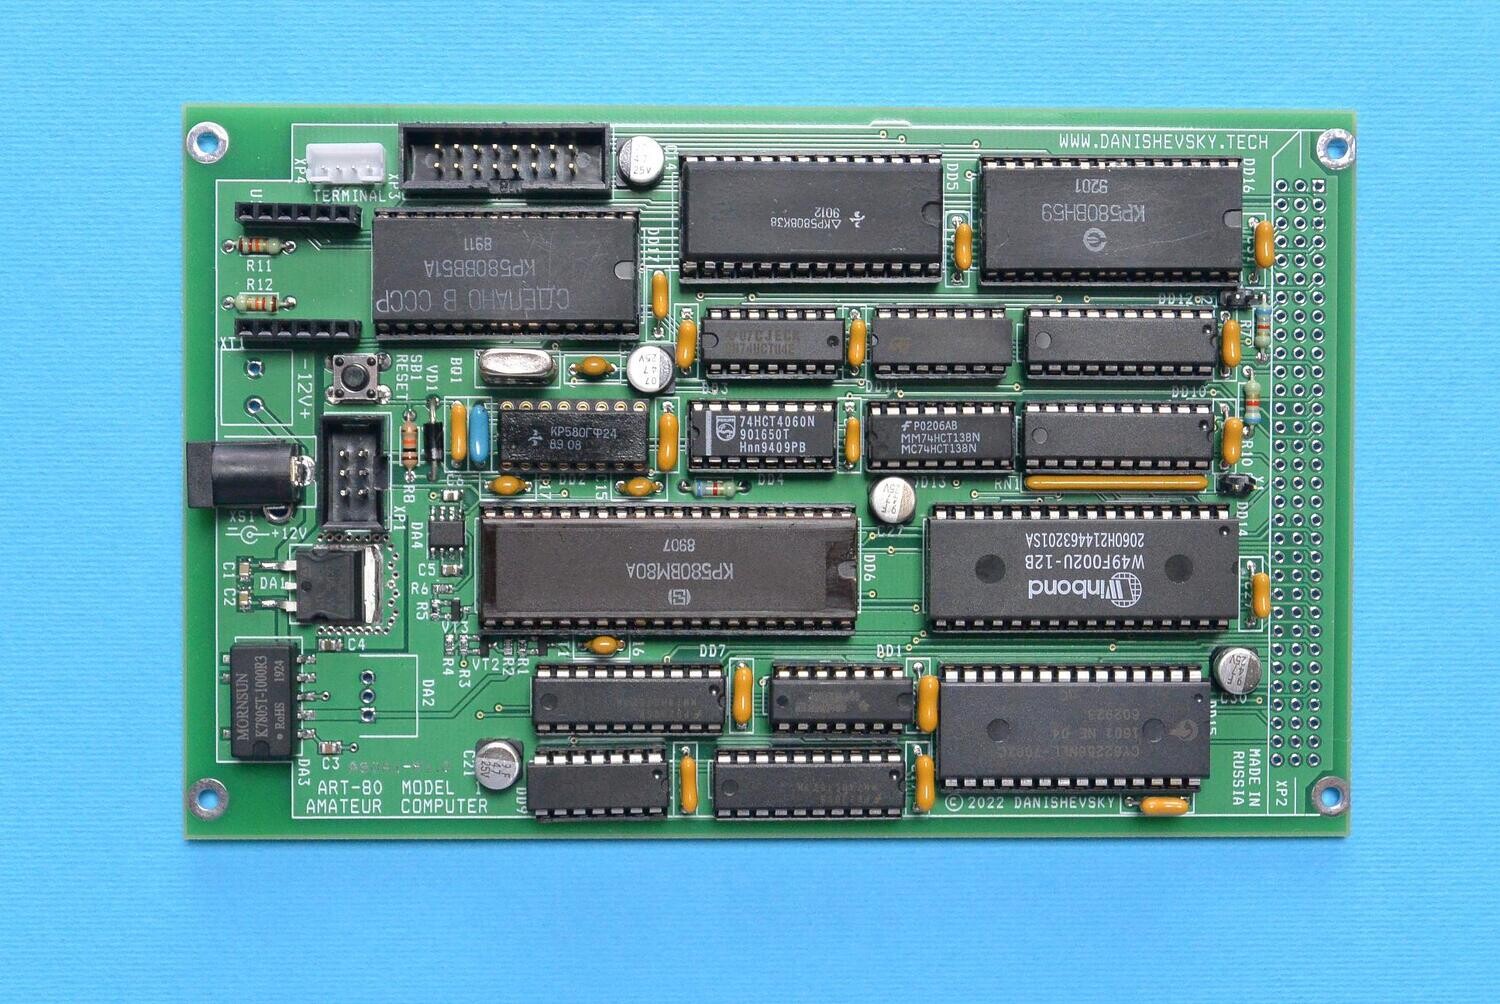 Любительский компьютер ART-80, модель 1, комплект деталей для самостоятельной сборки